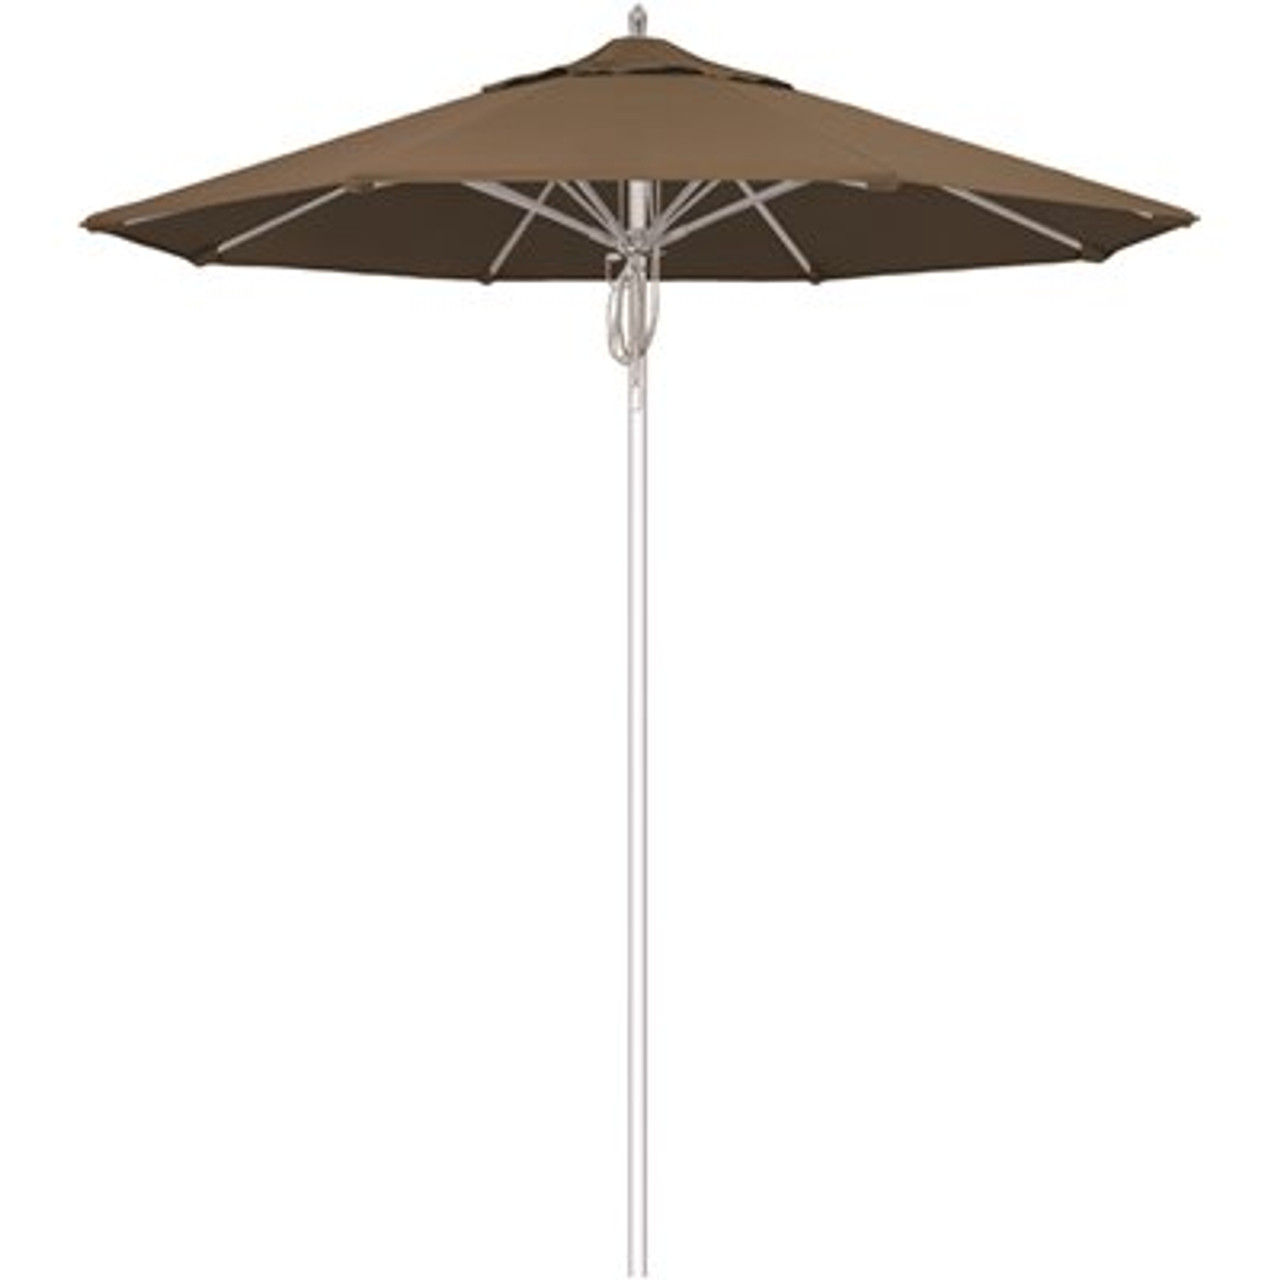 7.5 ft. Silver Aluminum Commercial Market Patio Umbrella Fiberglass Ribs and Pulley Lift in Cocoa Sunbrella